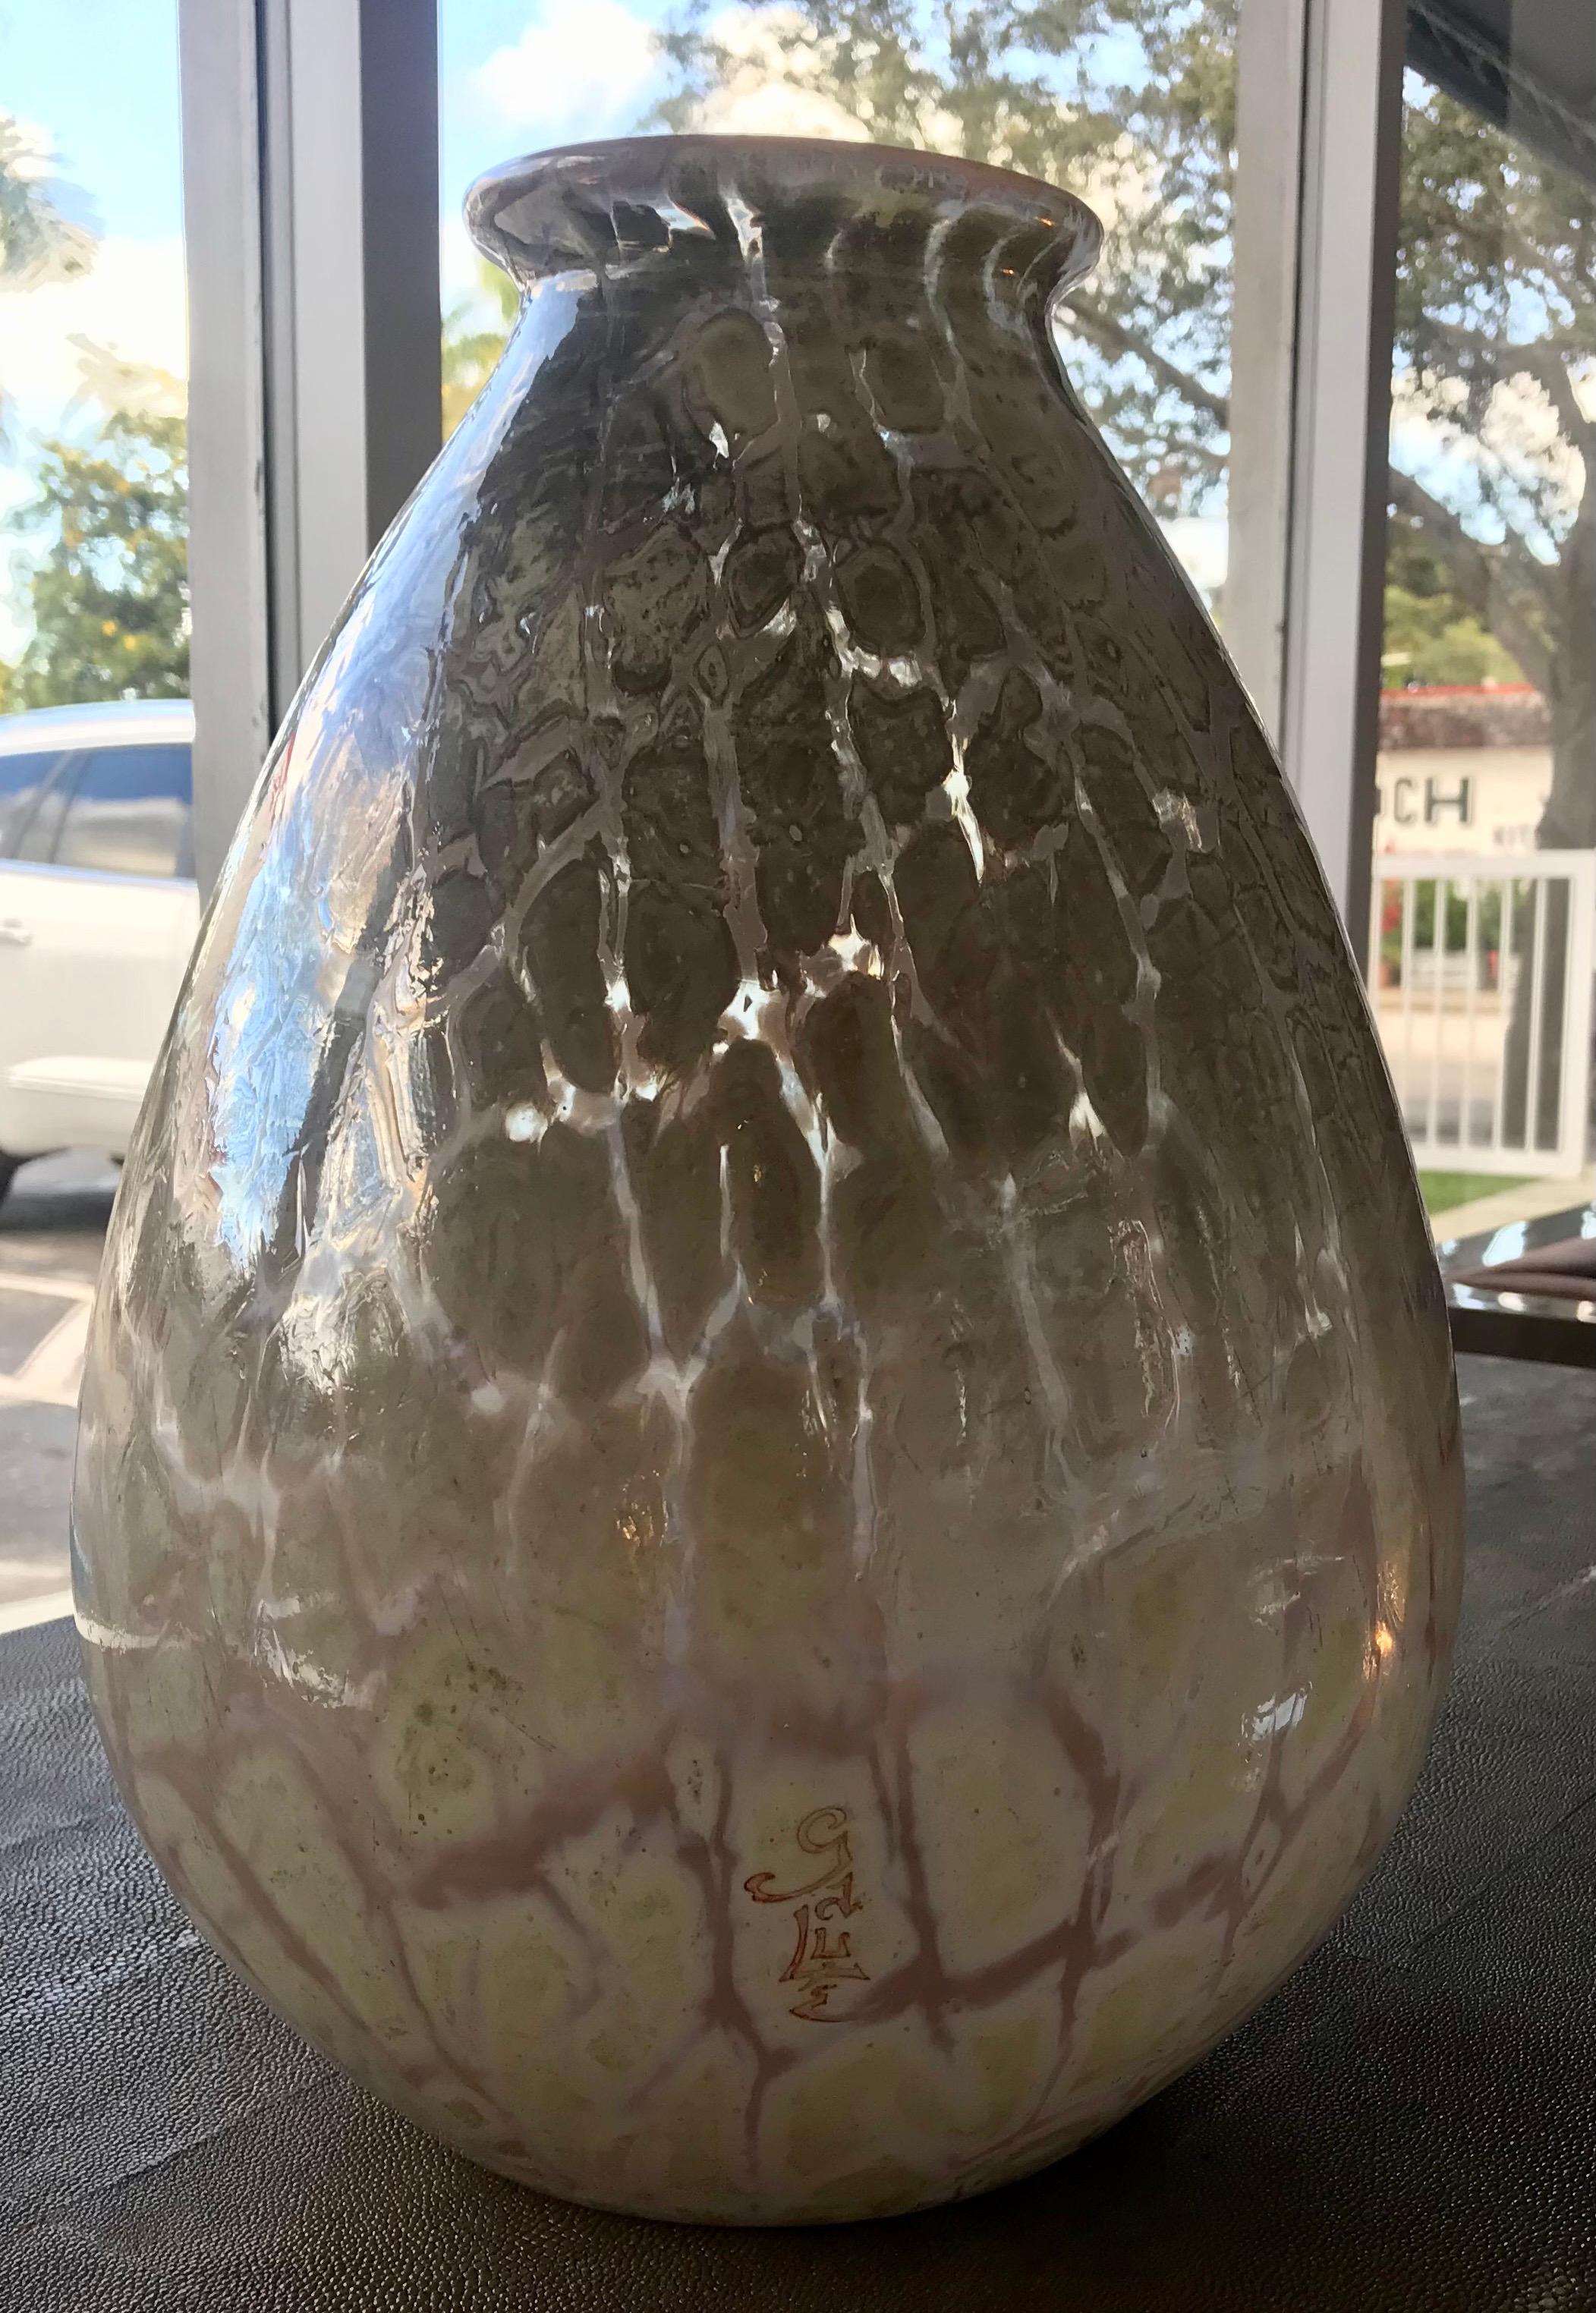 Emile Galle, Nancy. Vase, 1920er Jahre. Maße: H. 26 cm. Überfangenes Glas, klar, bernsteinfarben und opalweiß. Bei dieser extrem seltenen und limitierten Serie mit spezieller Tiefdrucksignatur wird eine einzigartige französische Überlagerungstechnik